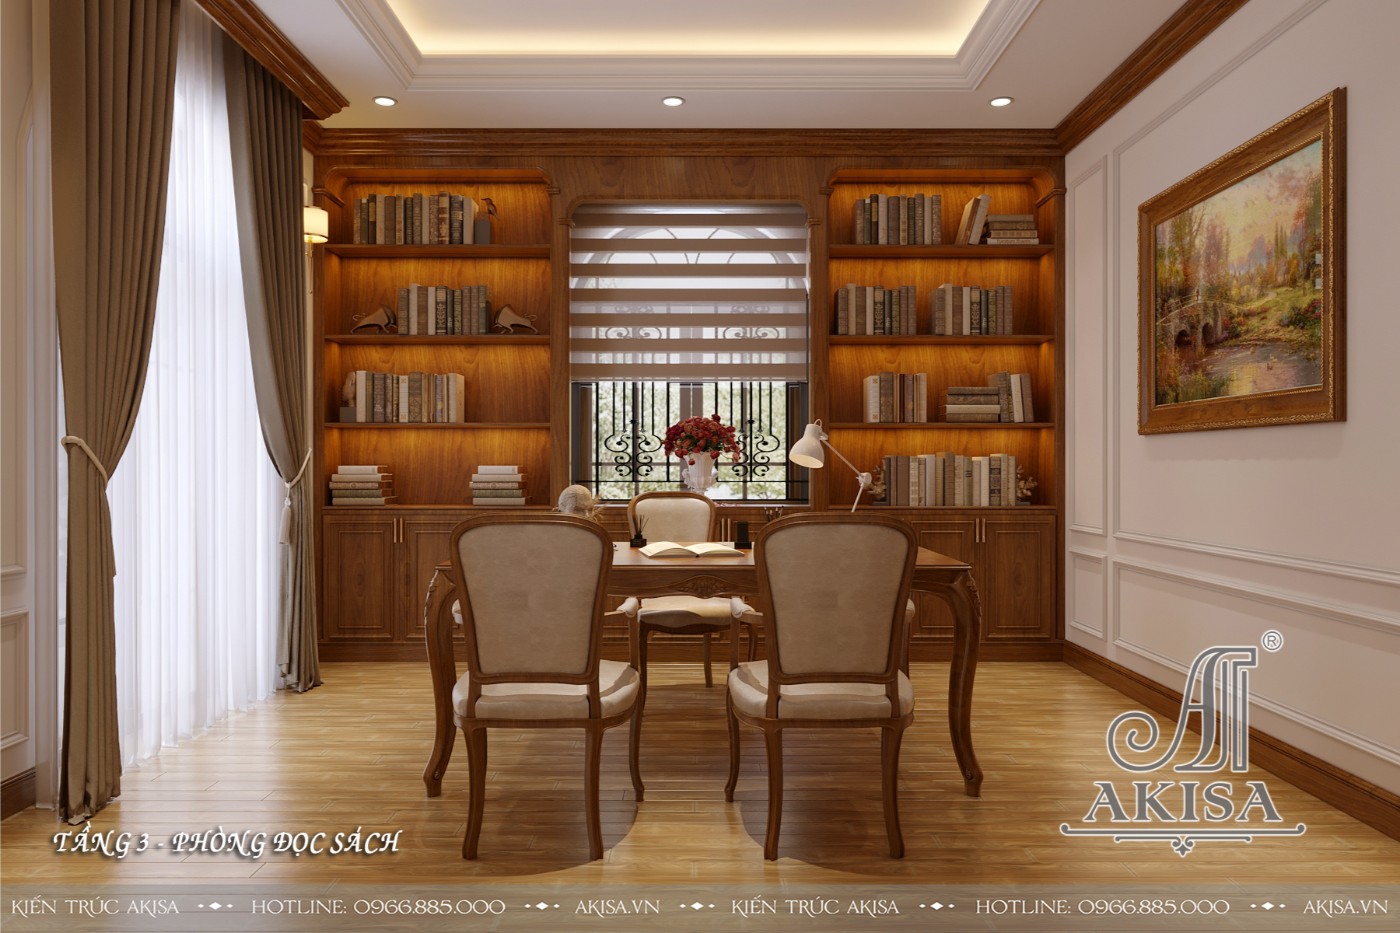 Mẫu nội thất tân cổ điển gỗ tự nhiên biệt thự 3 tầng - Phòng đọc sách